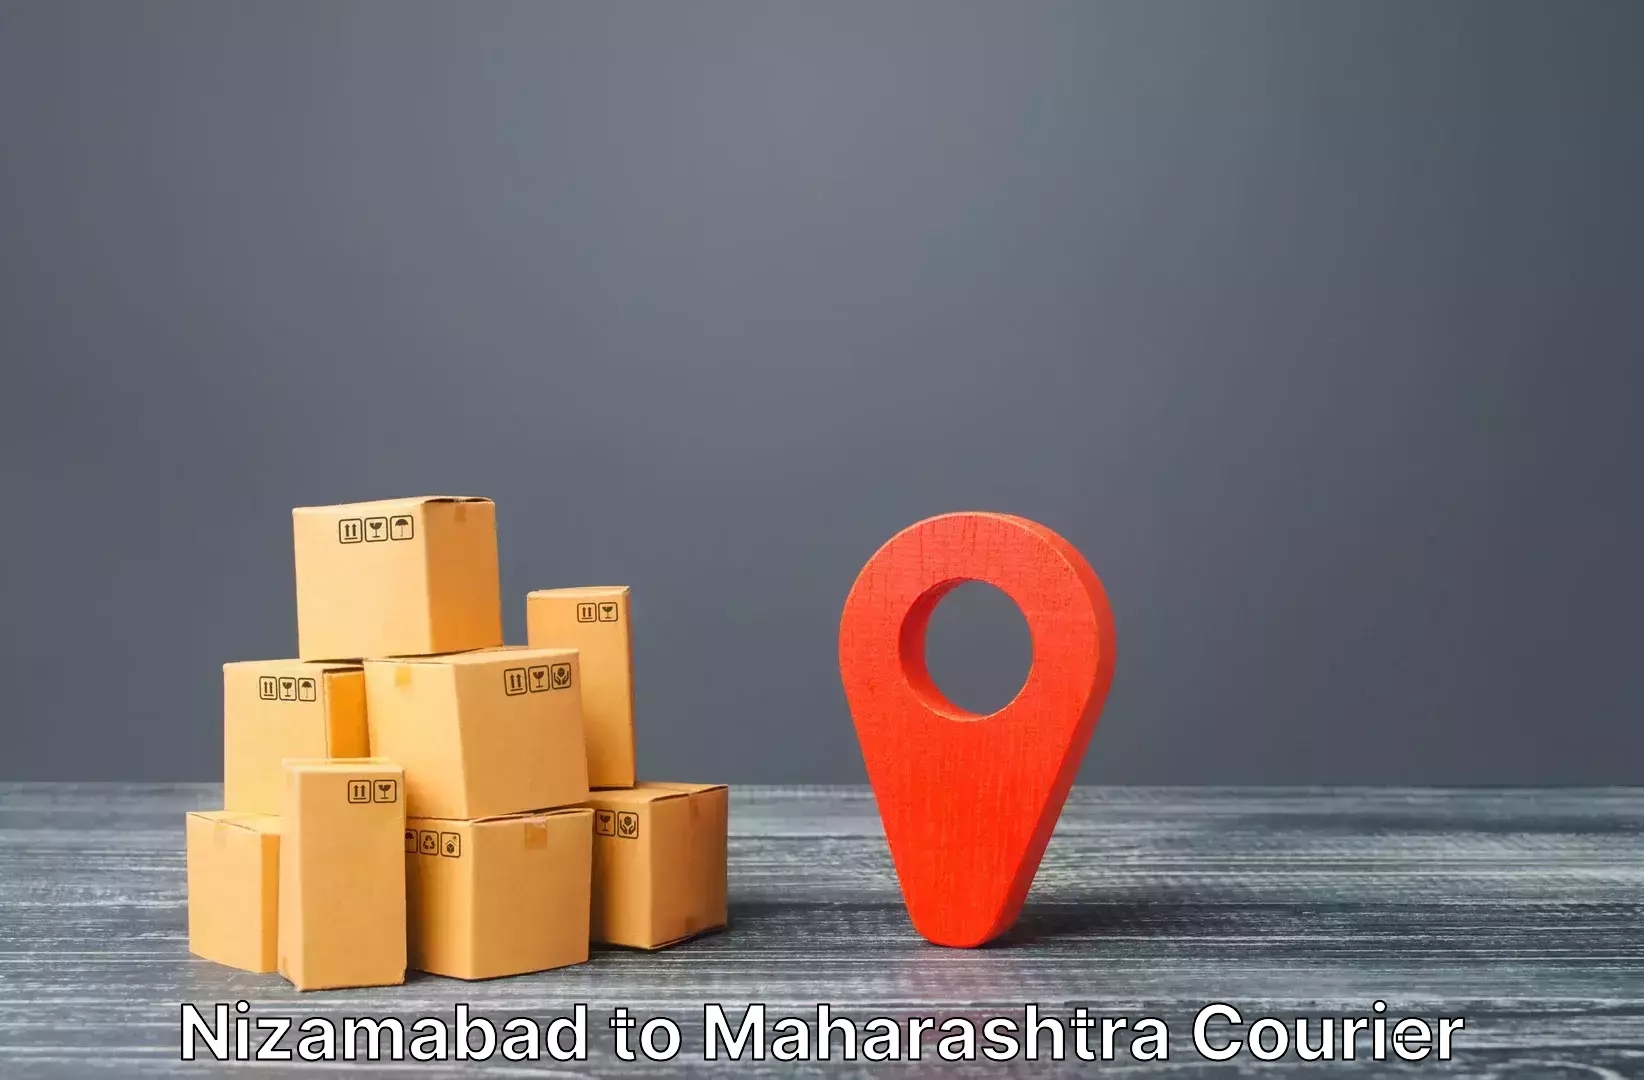 Personal effects shipping Nizamabad to Maharashtra